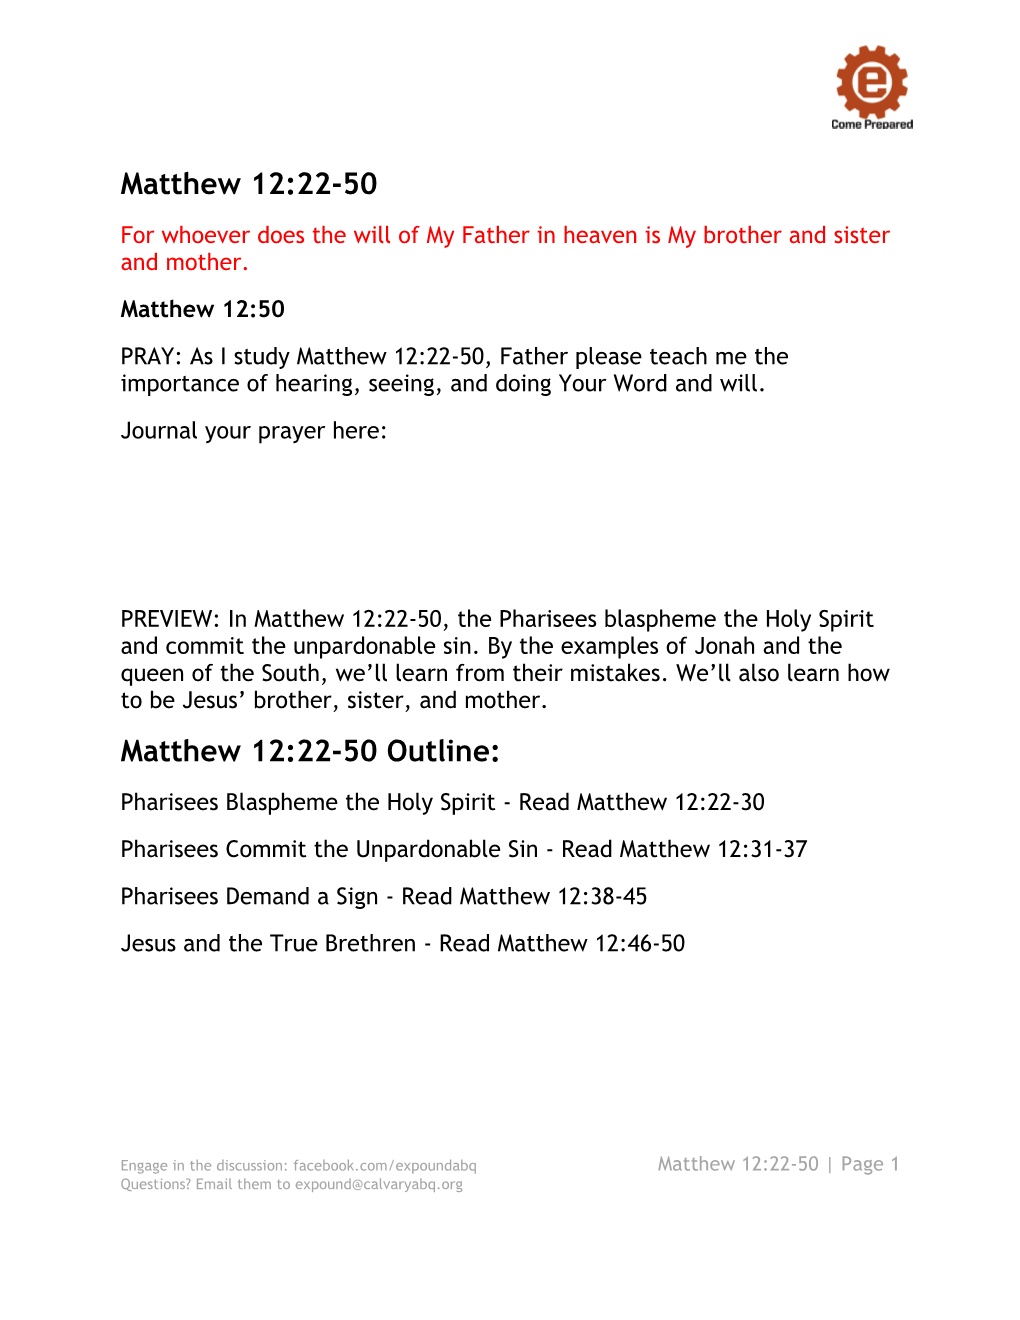 Matthew 12 22-50 Study Guide Handout